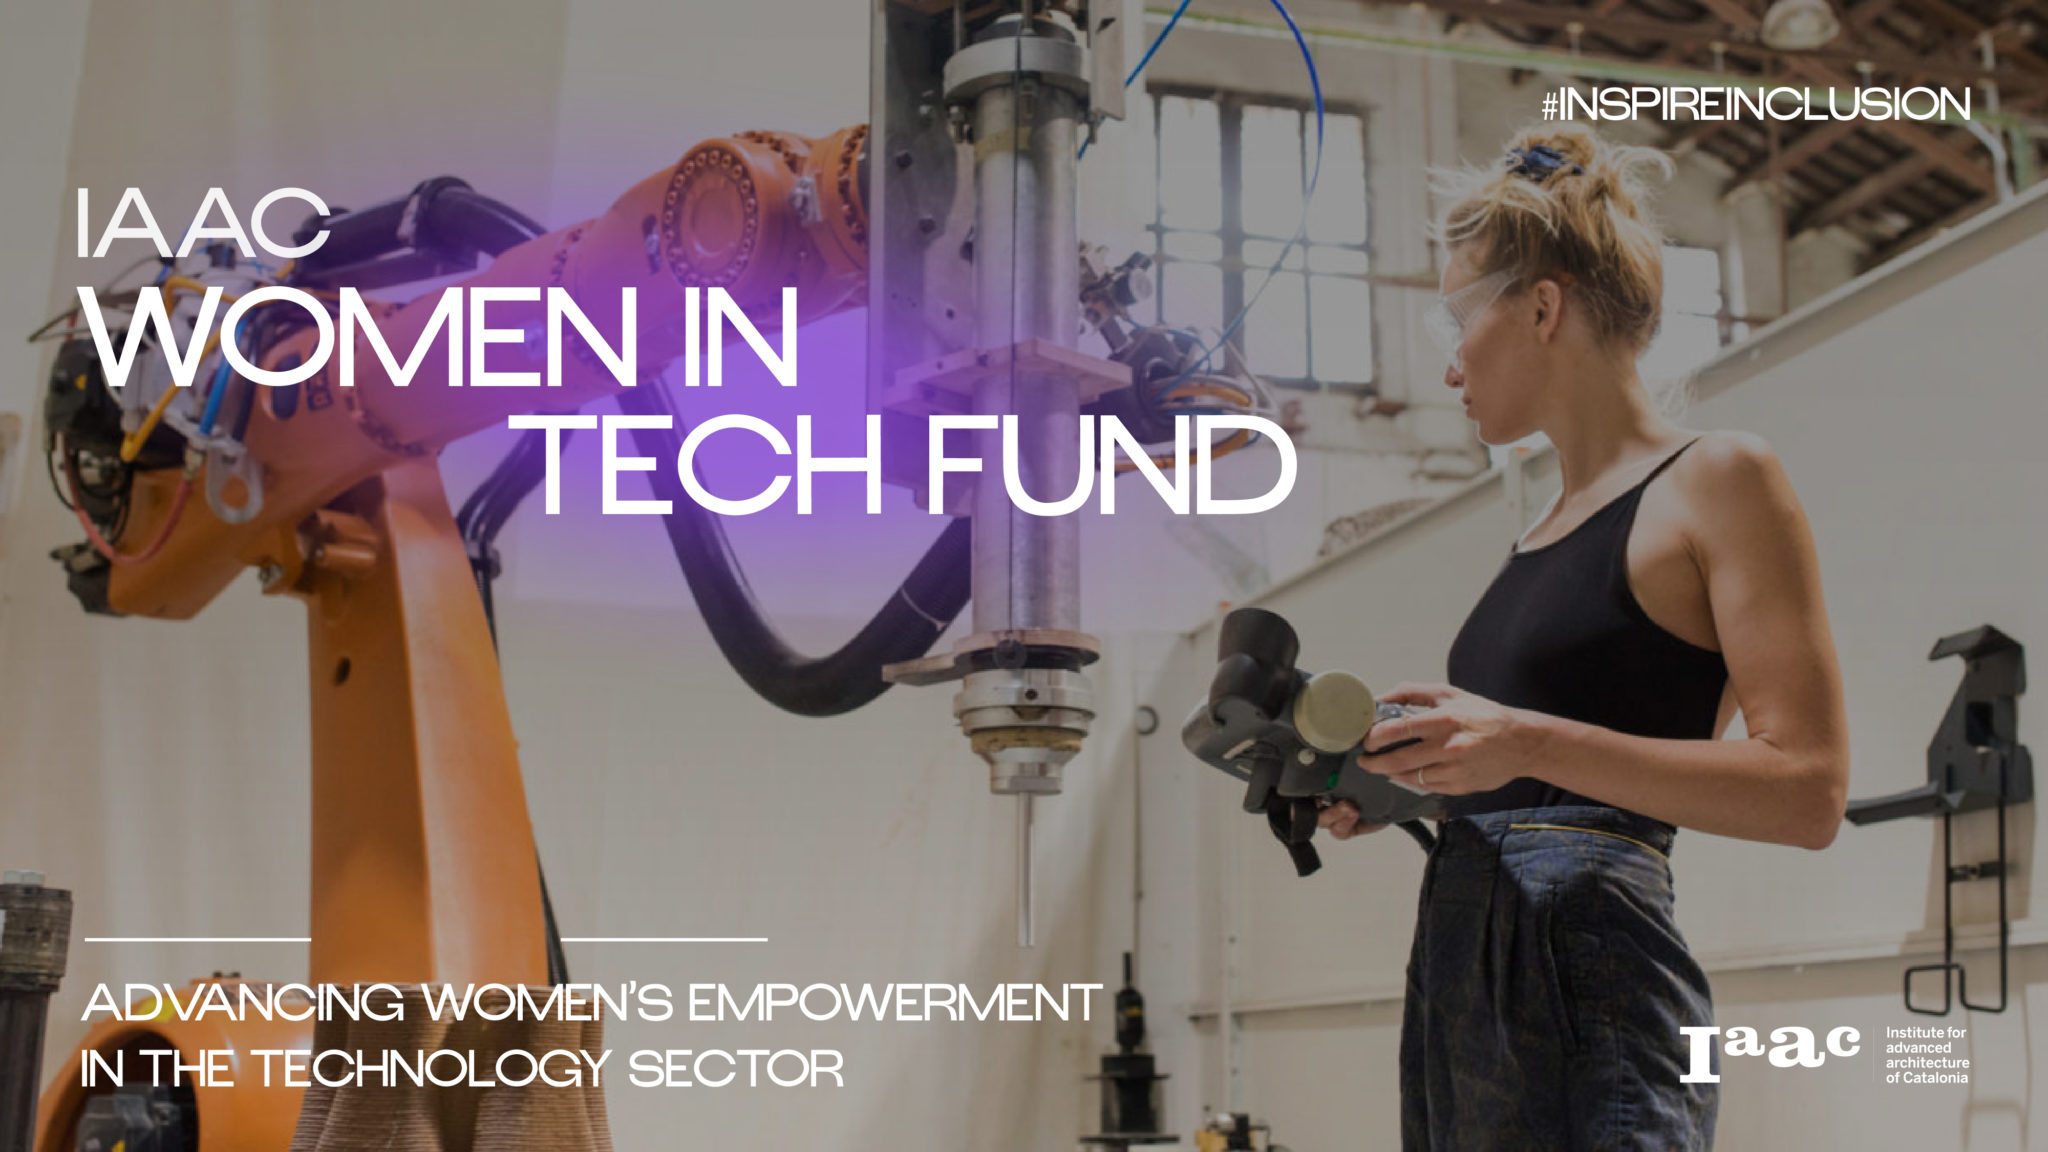 IAAC Women in Tech Fund